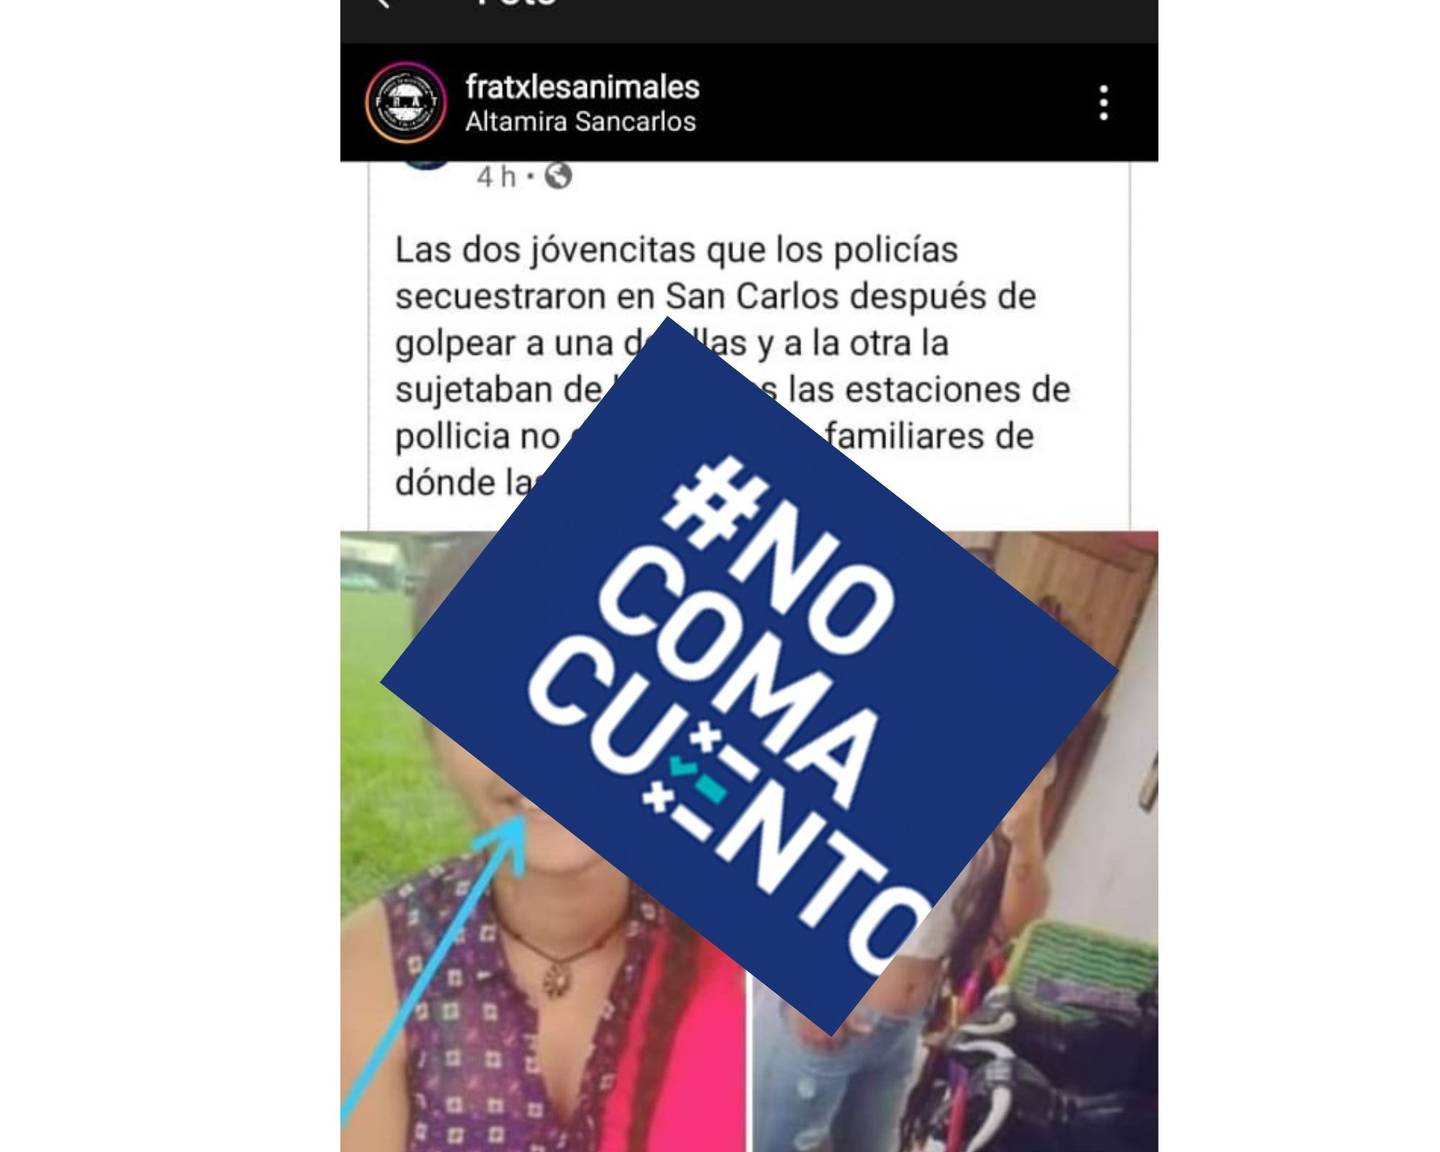 Una publicación en redes sociales asegura que la Policía tiene secuestradas a las dos mujeres detenidas el domingo en San Carlos, en una violenta acción de la Fuerza Pública para levantar un bloqueo.